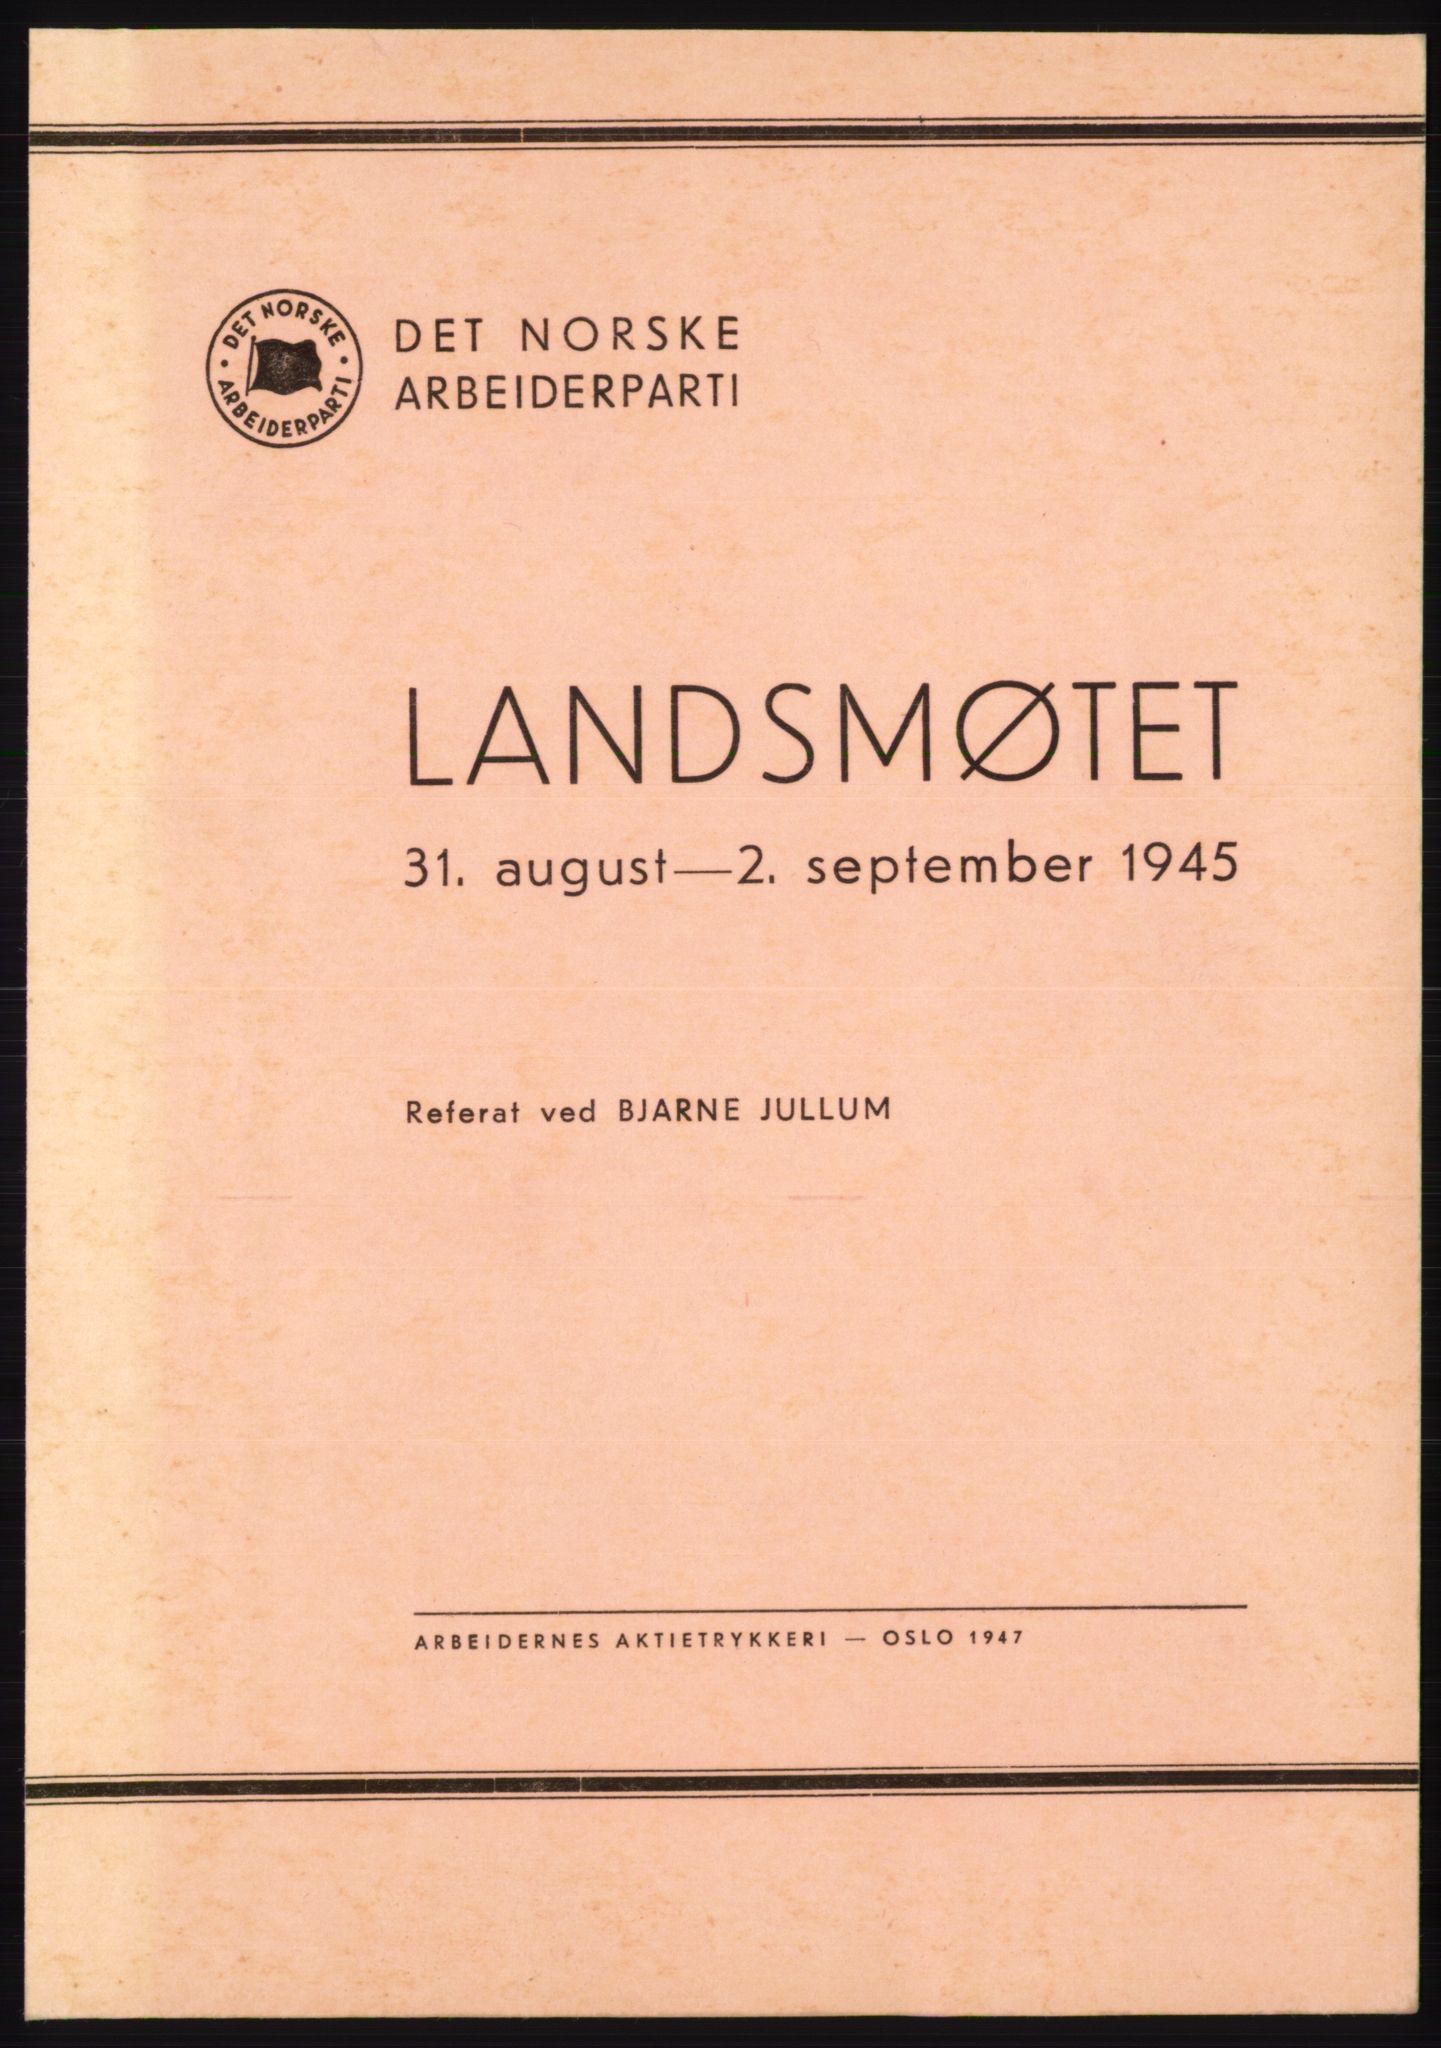 Det norske Arbeiderparti - publikasjoner, AAB/-/-/-: Protokoll over forhandlingene på landsmøtet 31. august og 1.-2. september 1945, 1945